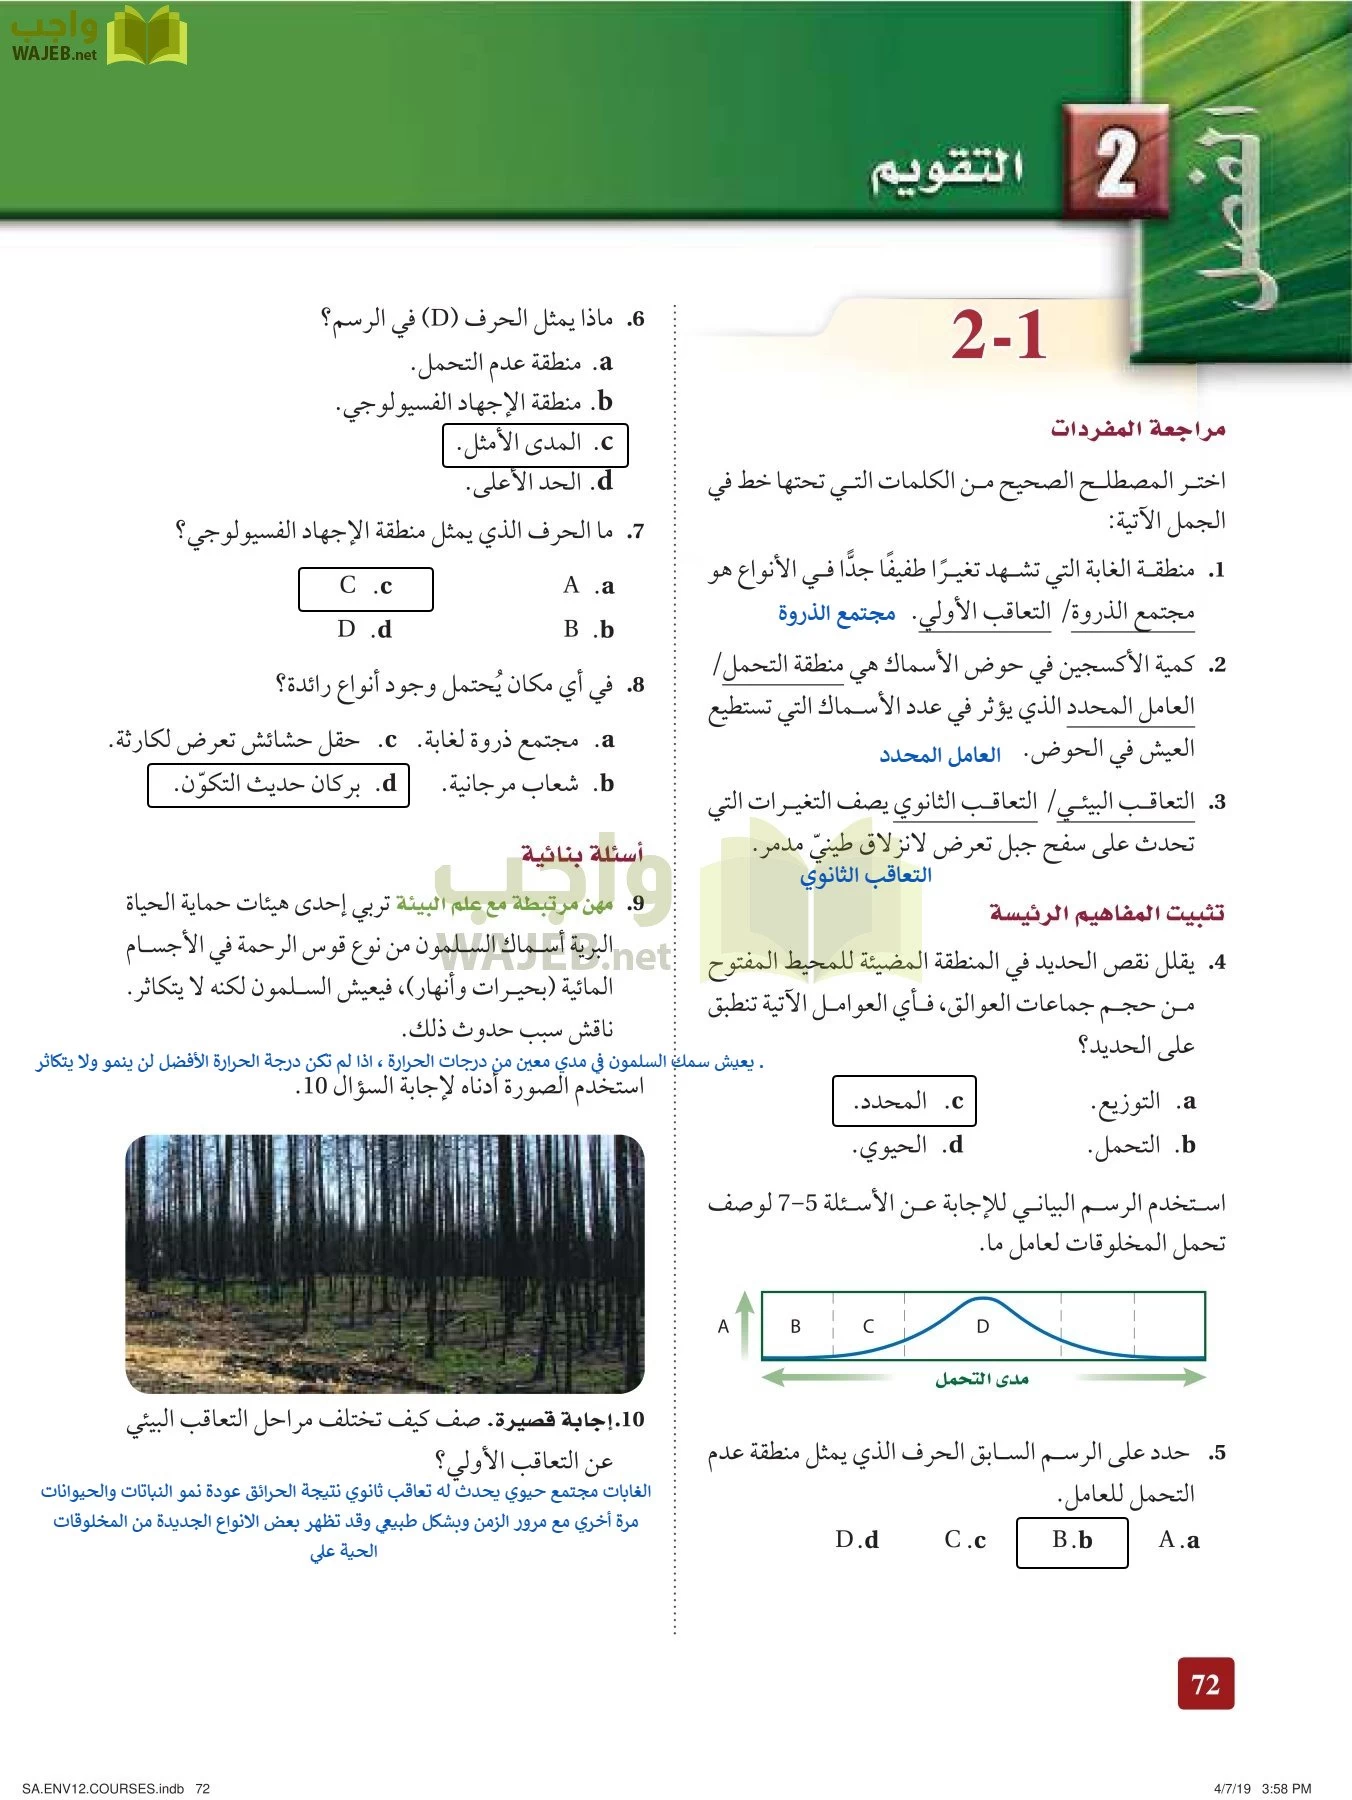 حل علم البيئة مقررات صفحة 71 - واجب